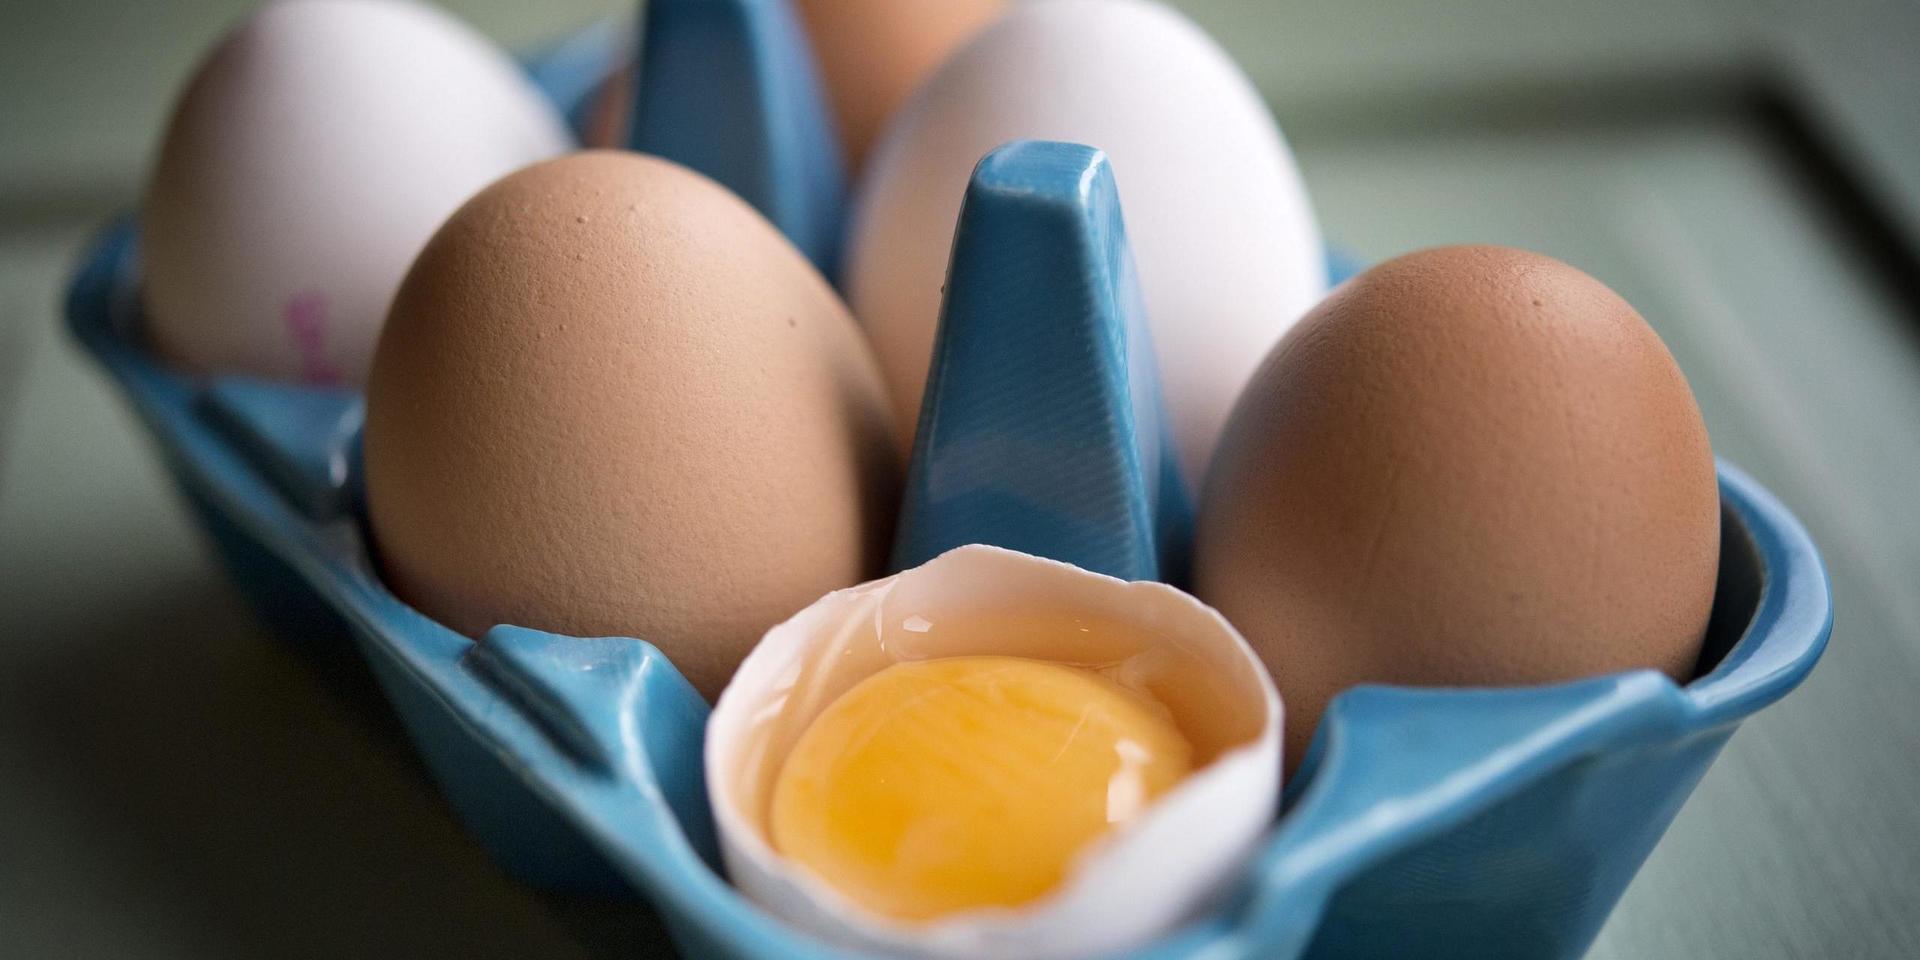 Kärnan i detta är att ta ett samhällsansvar – inte att hindra ungdomar från att köpa ägg, enligt Linda Dahlin.